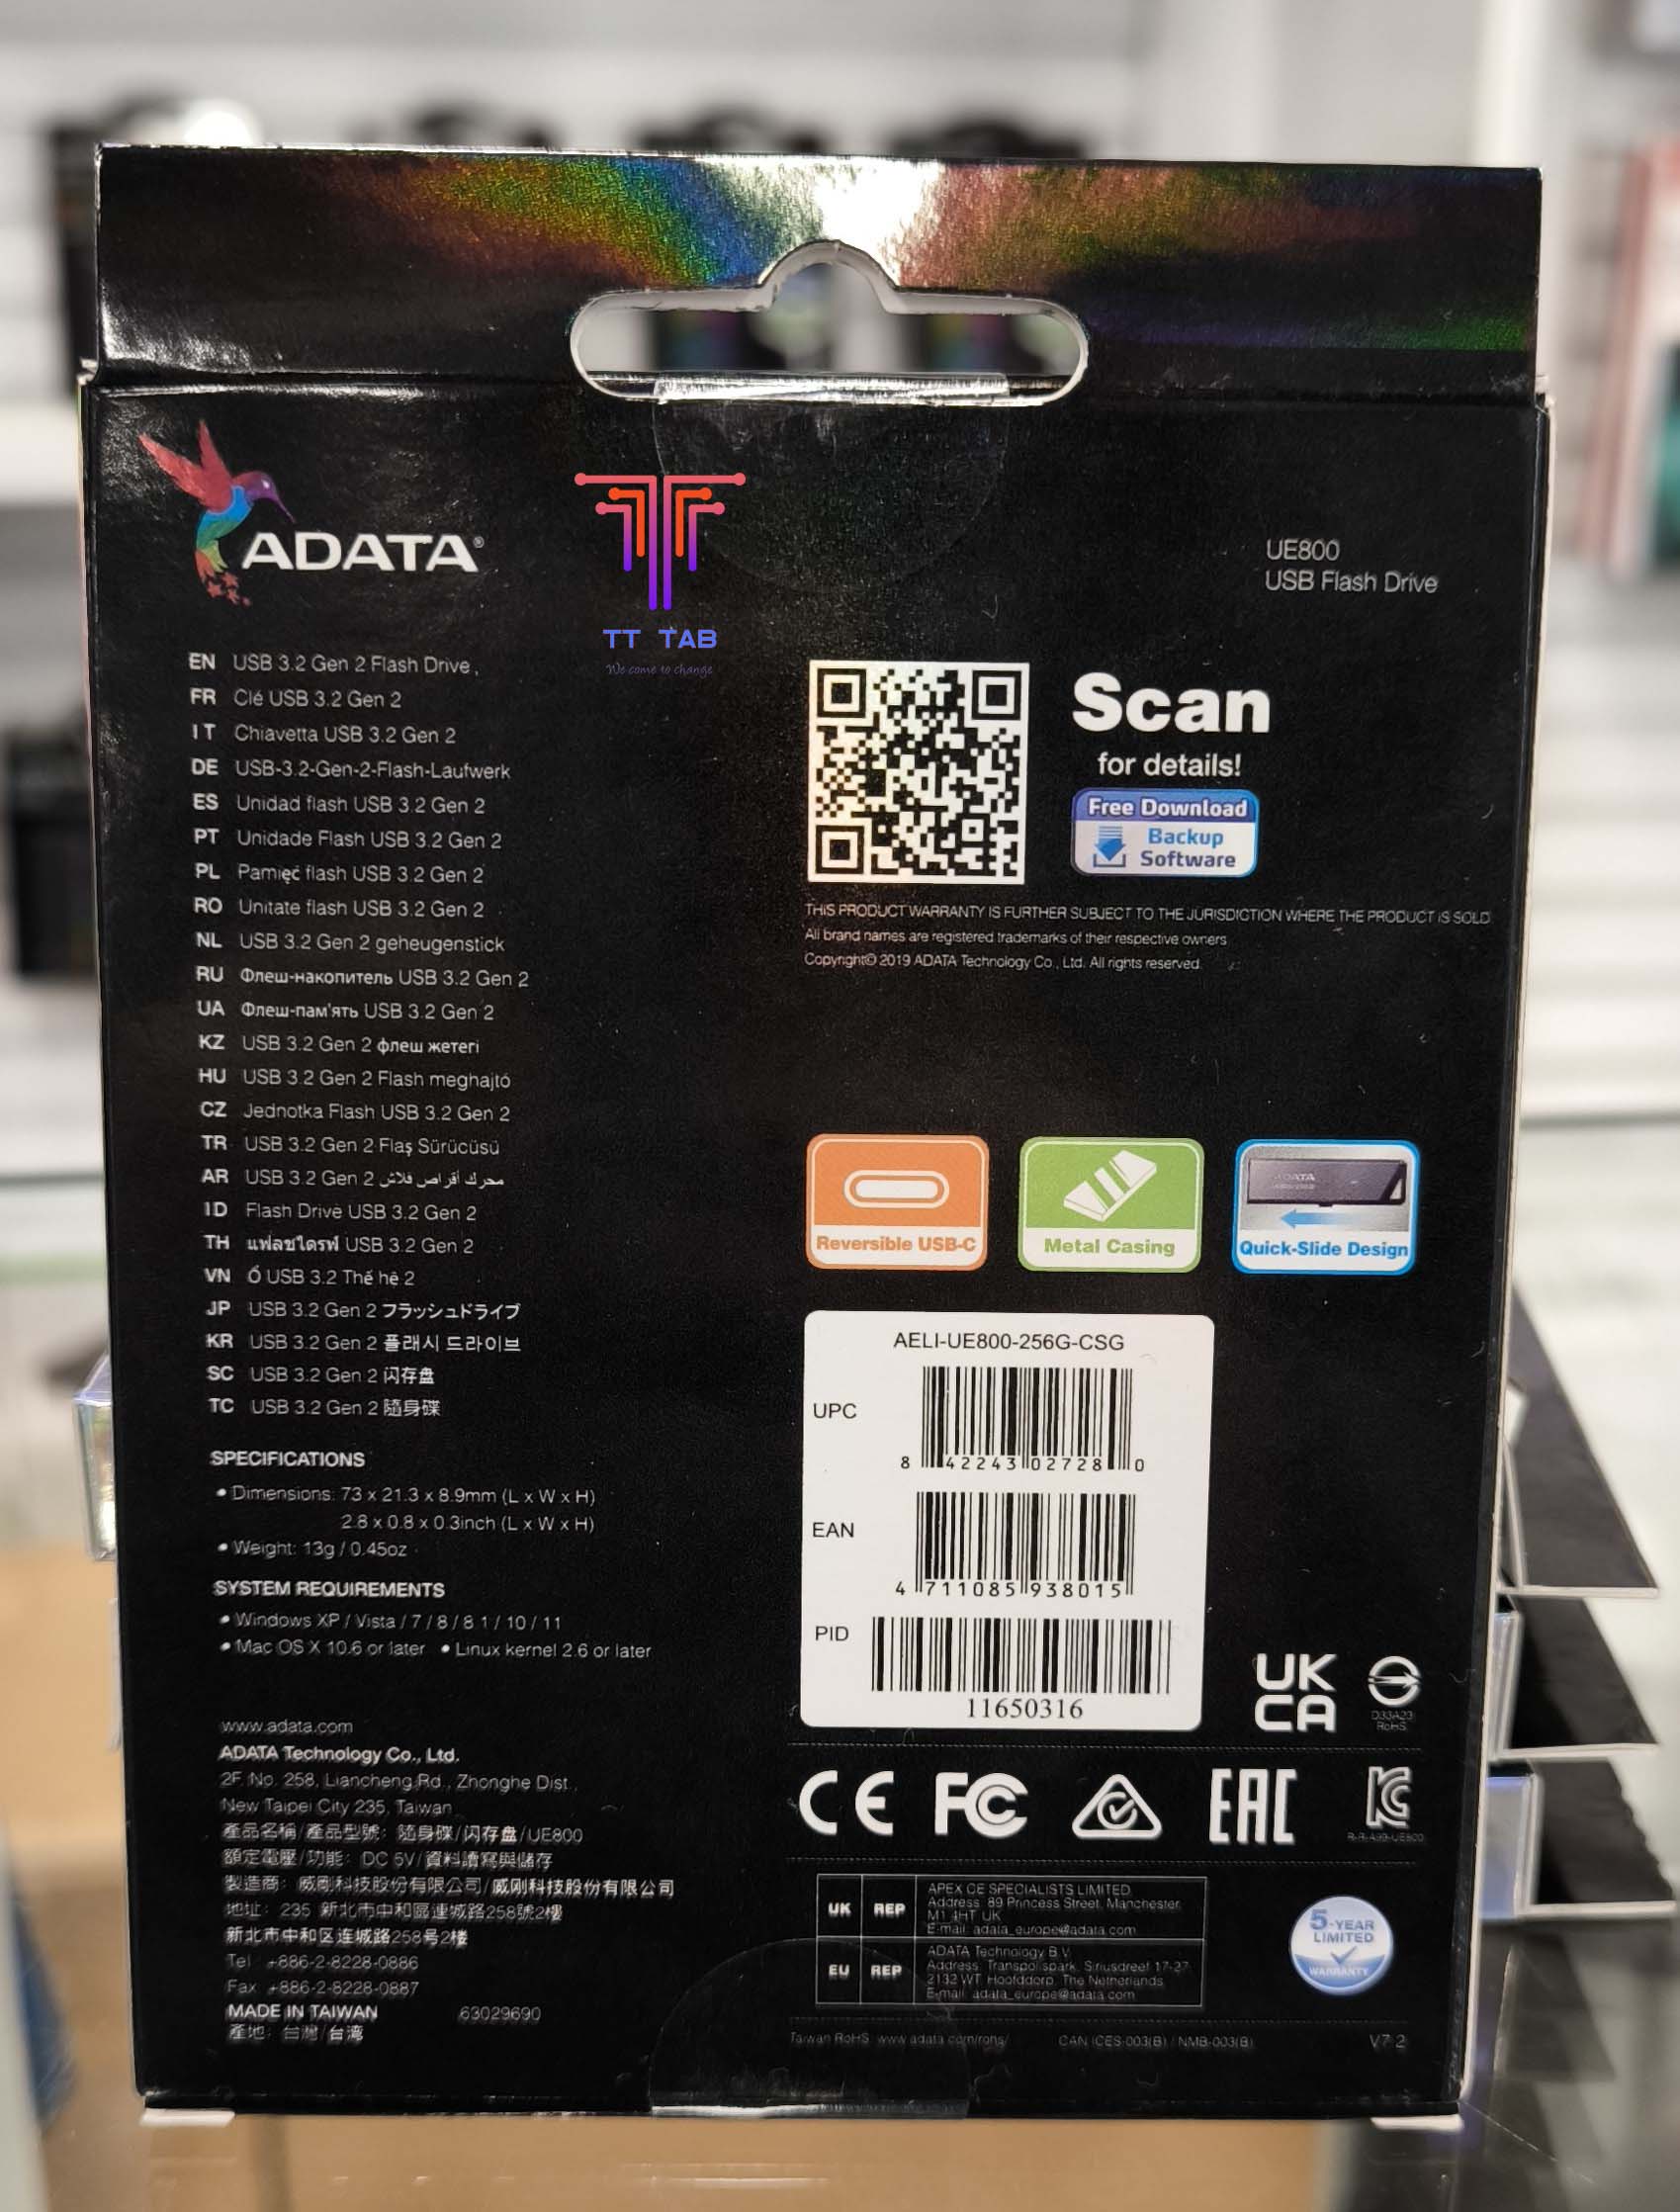 ADATA UE800 Flash Drive Type-C 3.2 Gen2 1000MB/s